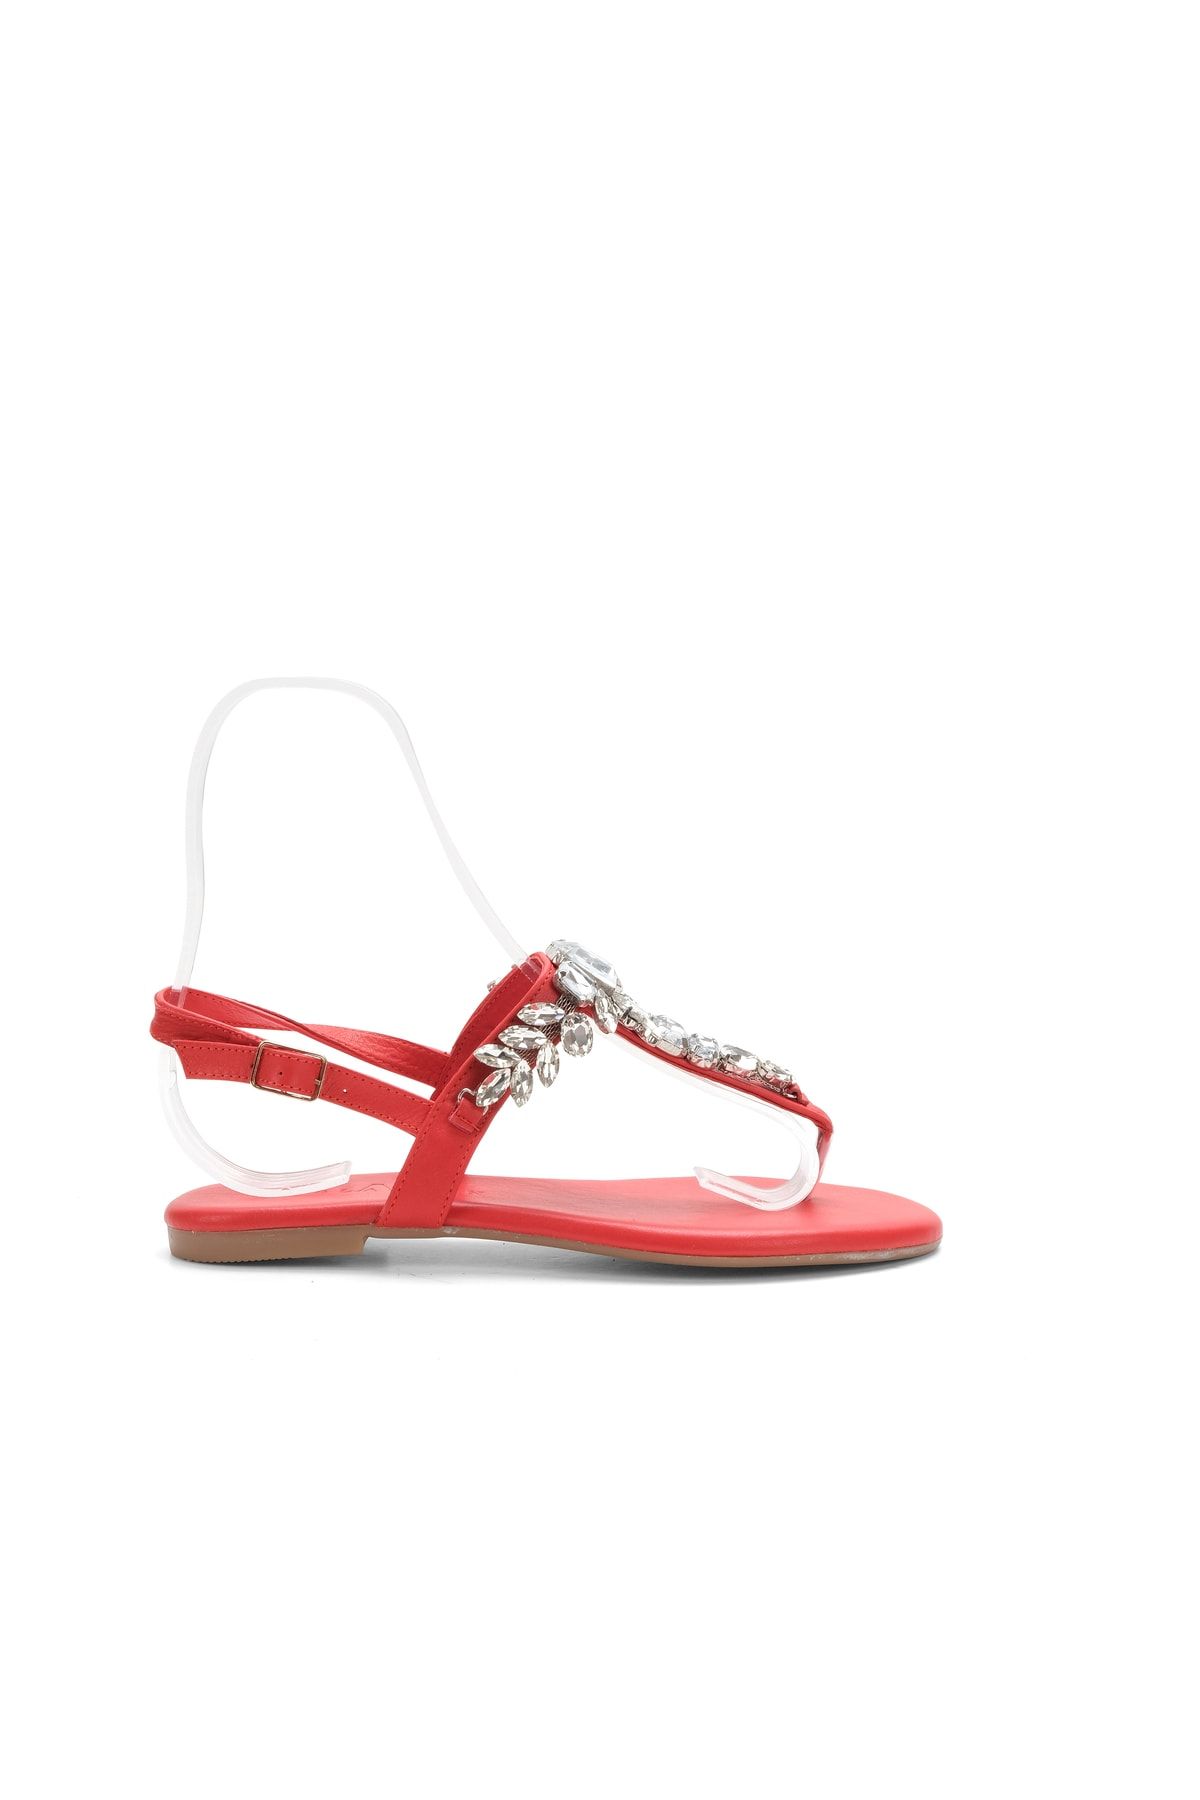 Oblavion Lavion Yeni Sezon Hakiki Deri Kırmızı Kristal Taşlı Günlük Kadın Sandalet